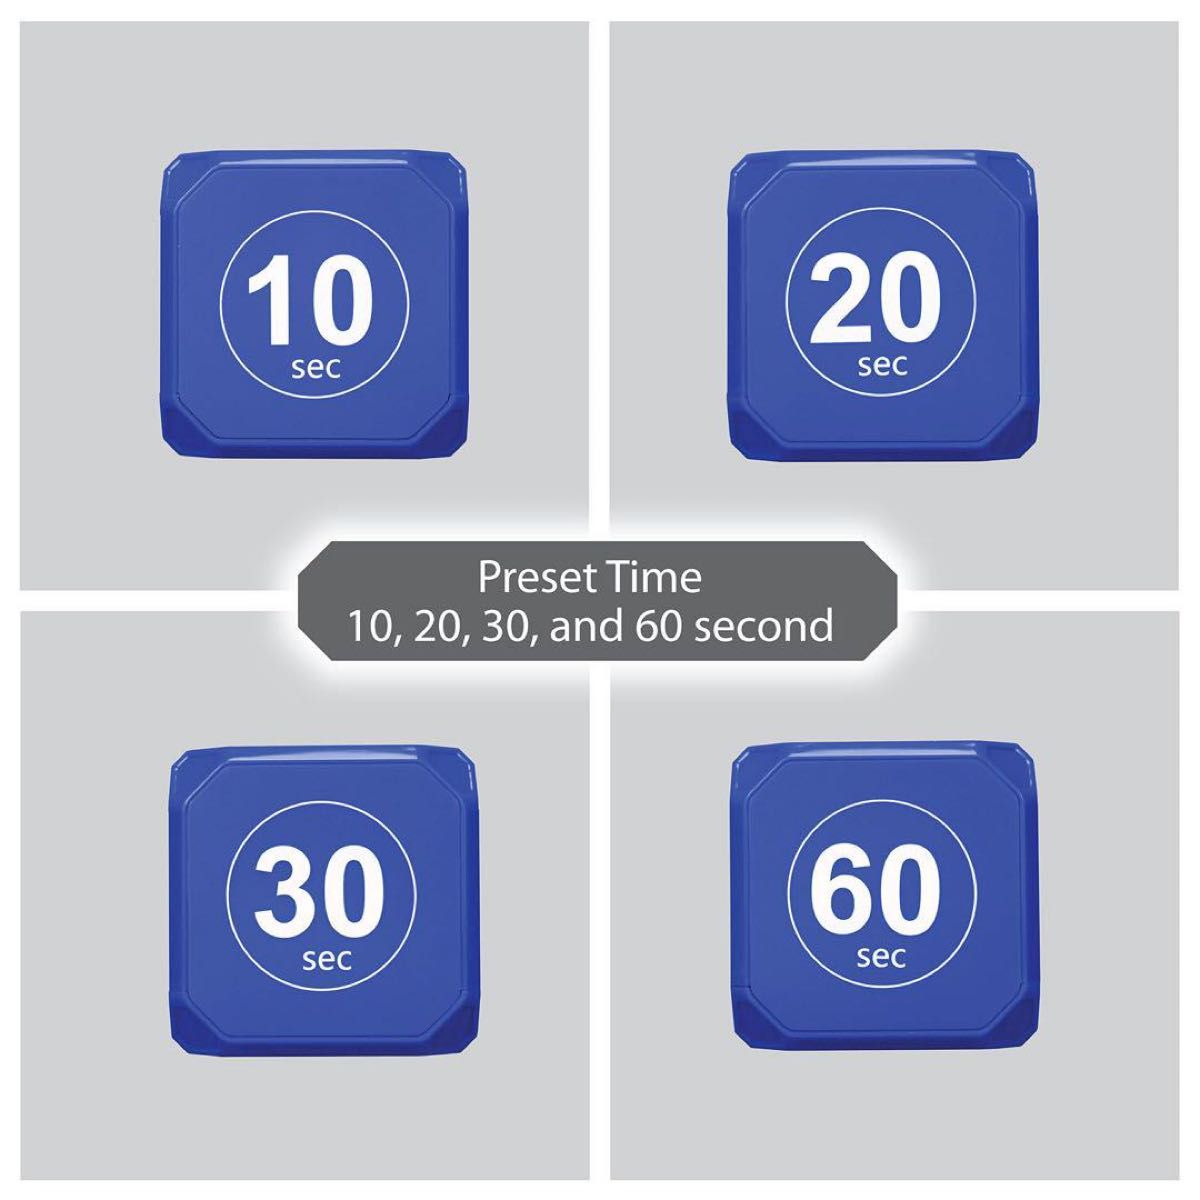 TimeCube プリセット タイマー LEDライト4つ アラーム付き 時間の管理用 秒単位 カウントダウン設定 ブルー